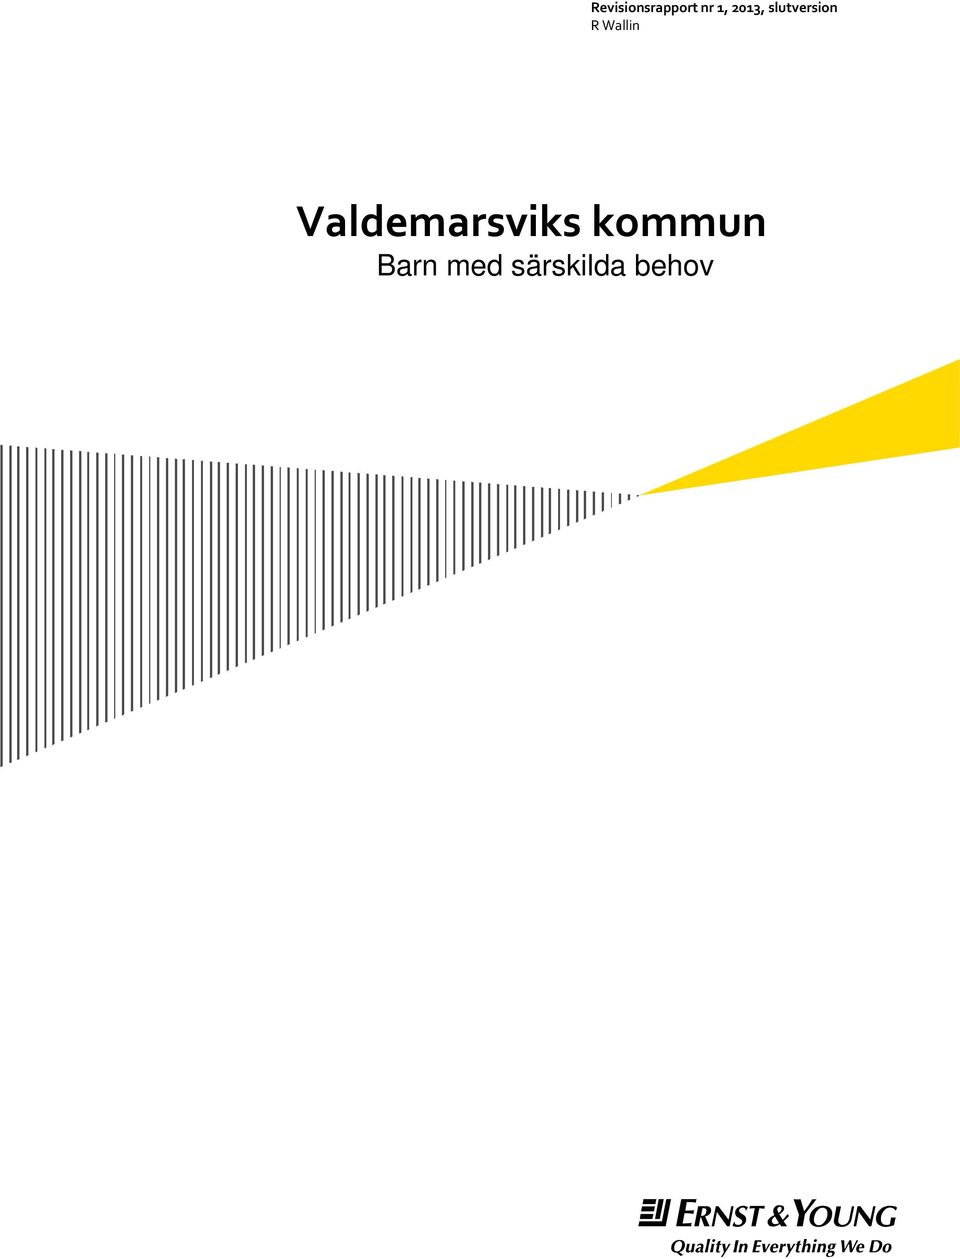 Wallin Valdemarsviks